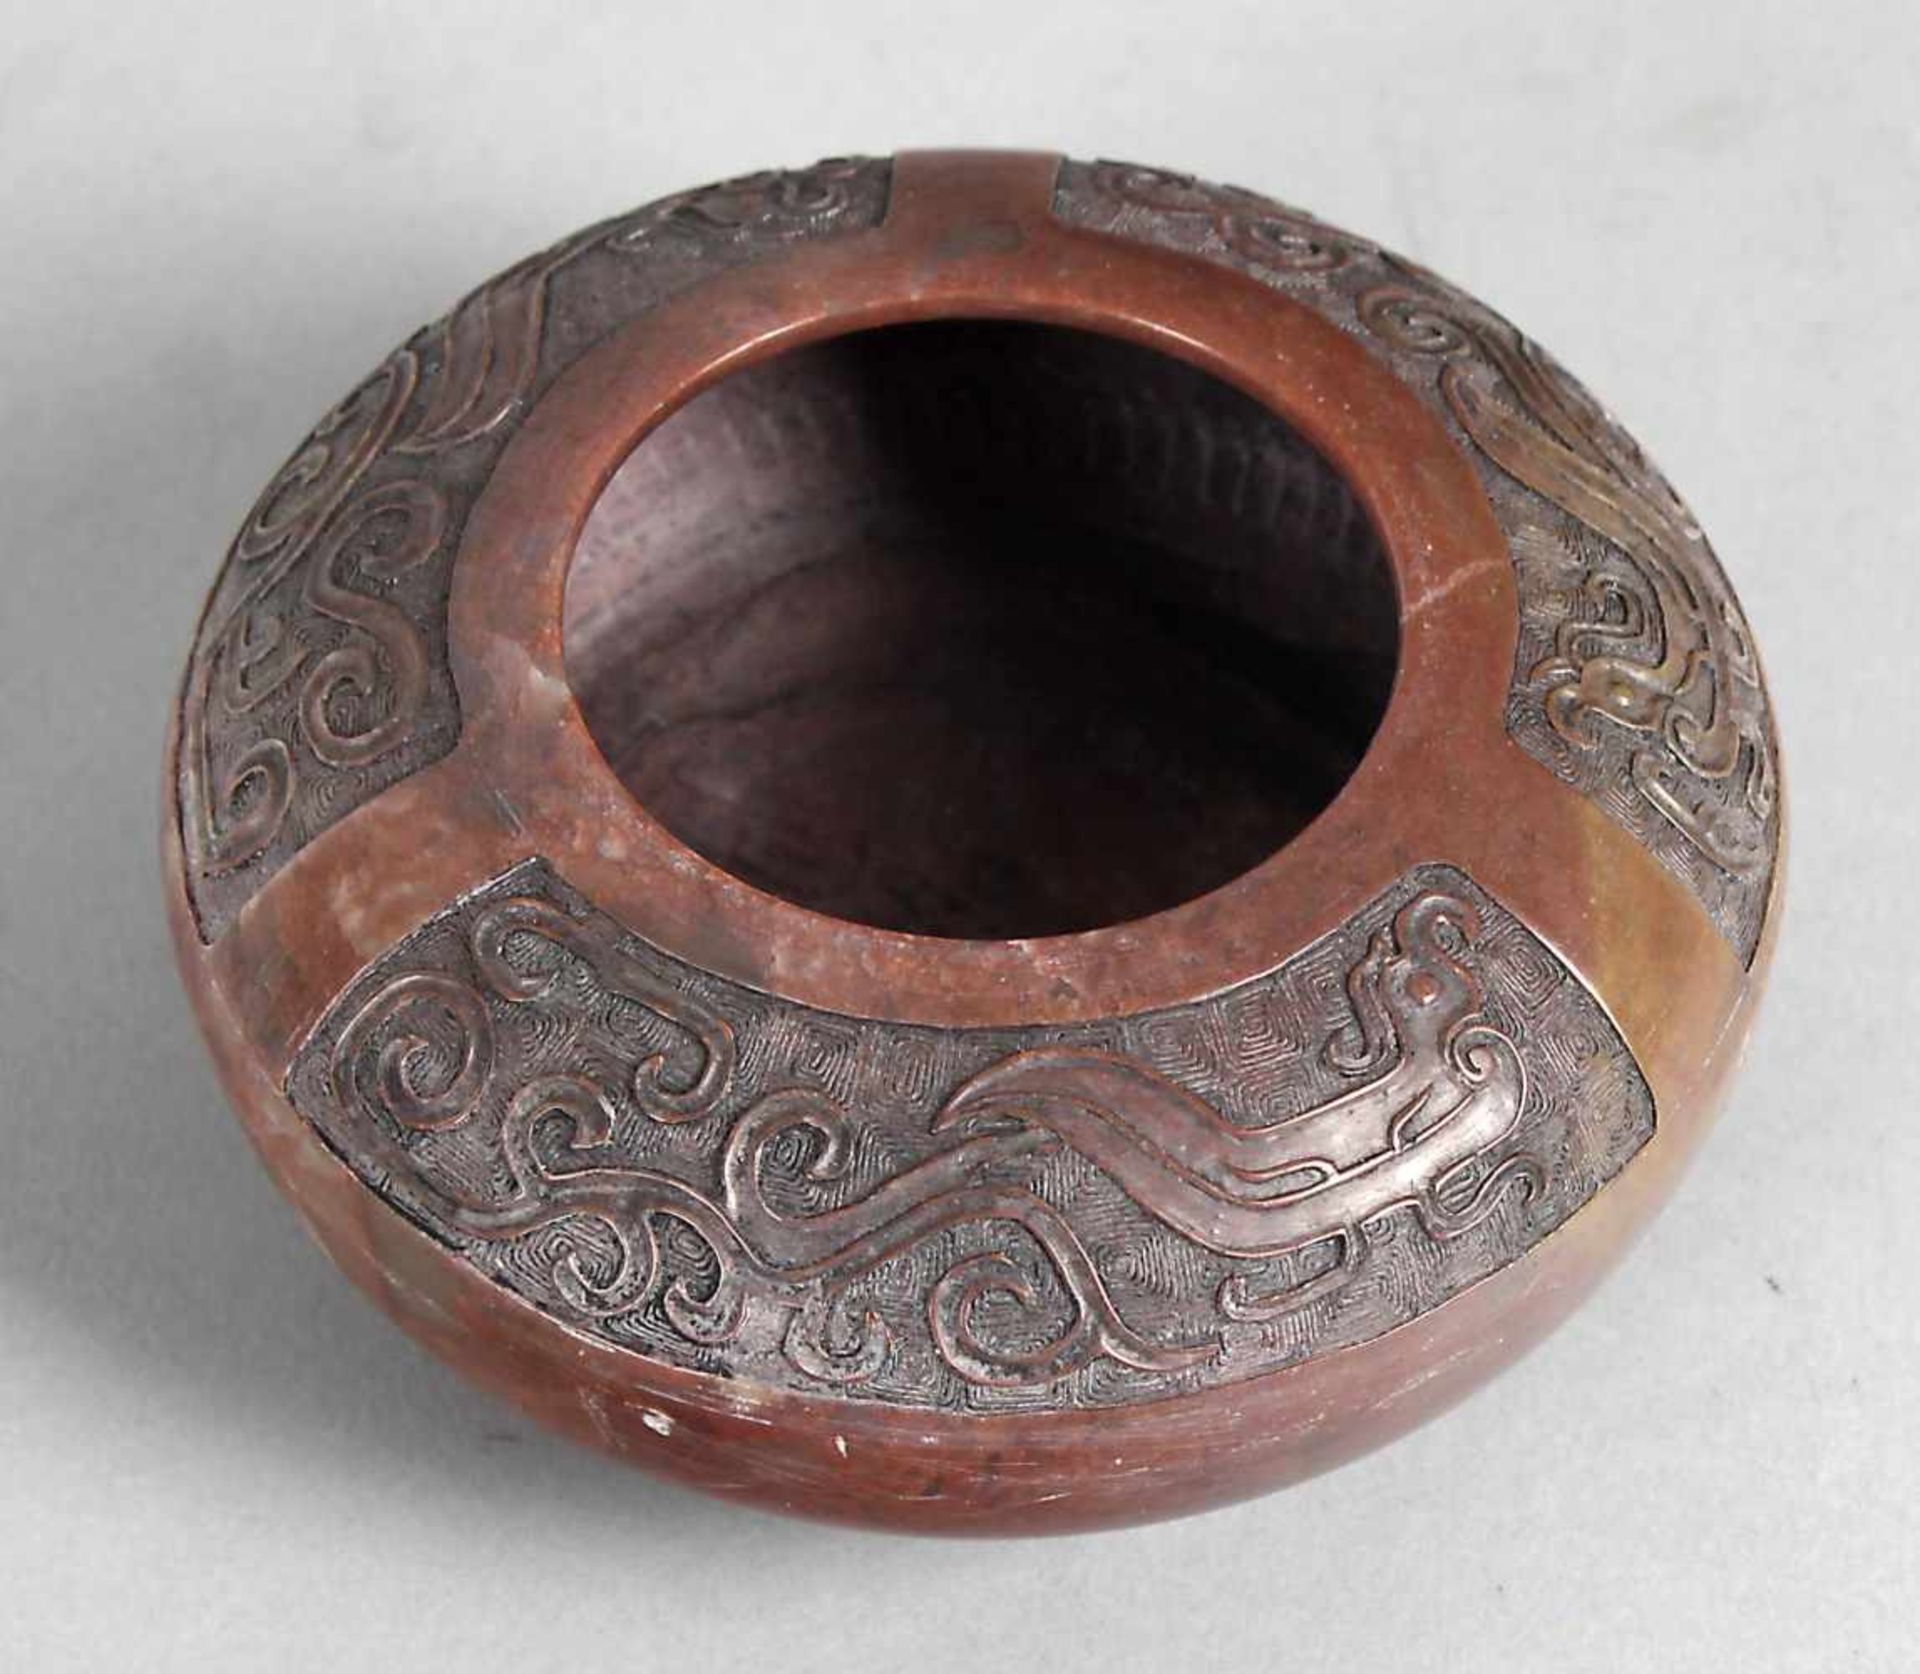 Pinselwaschgefäß, China, um 1900rot-braun geäderter Marmor, ballenförmig, die breite Schulter mit